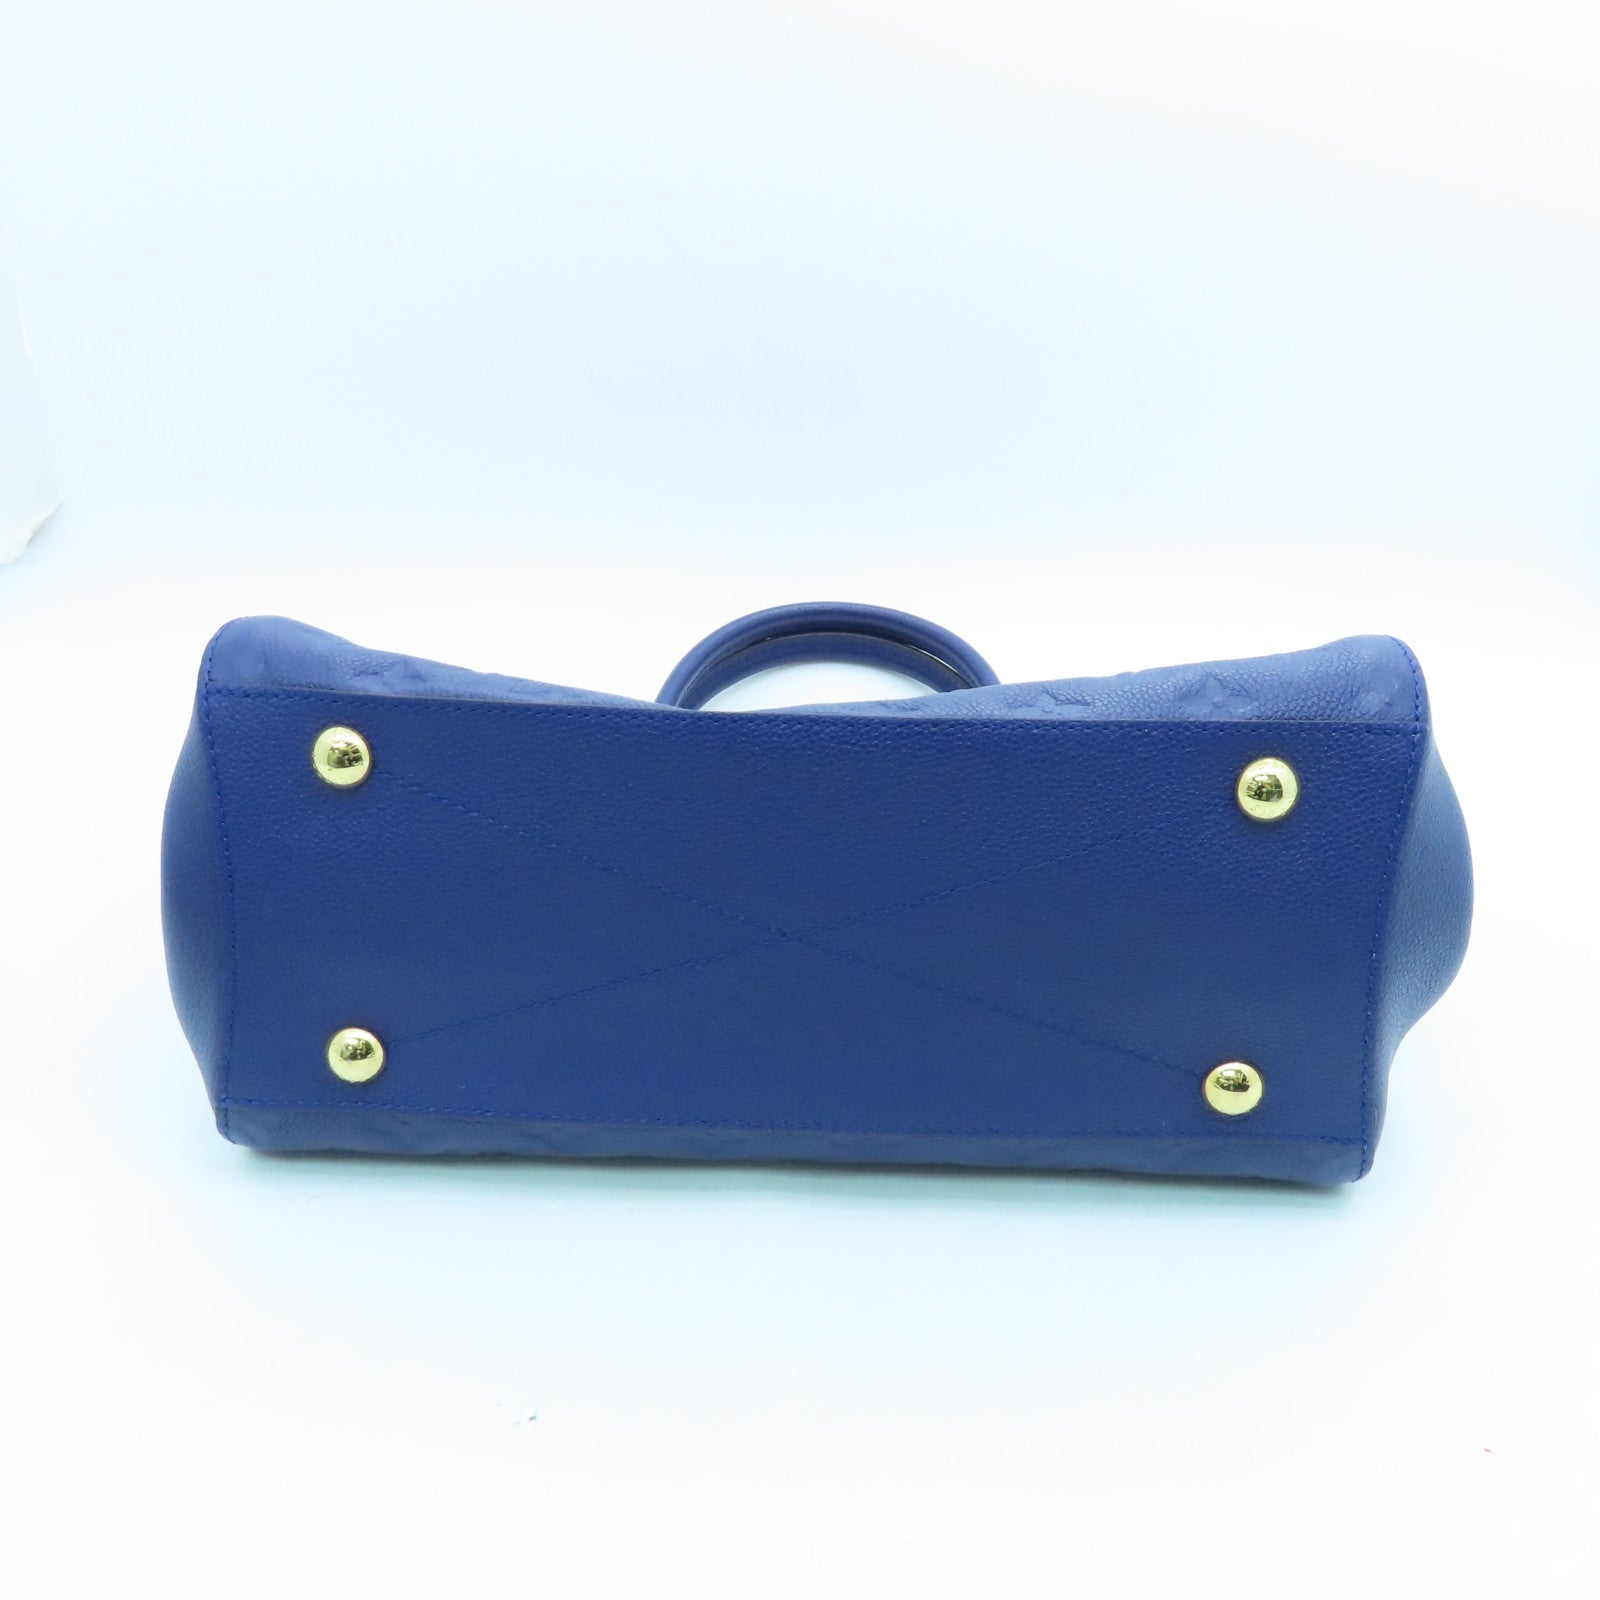 Louis Vuitton Monogram Empreinte Montaigne MM - Blue Handle Bags